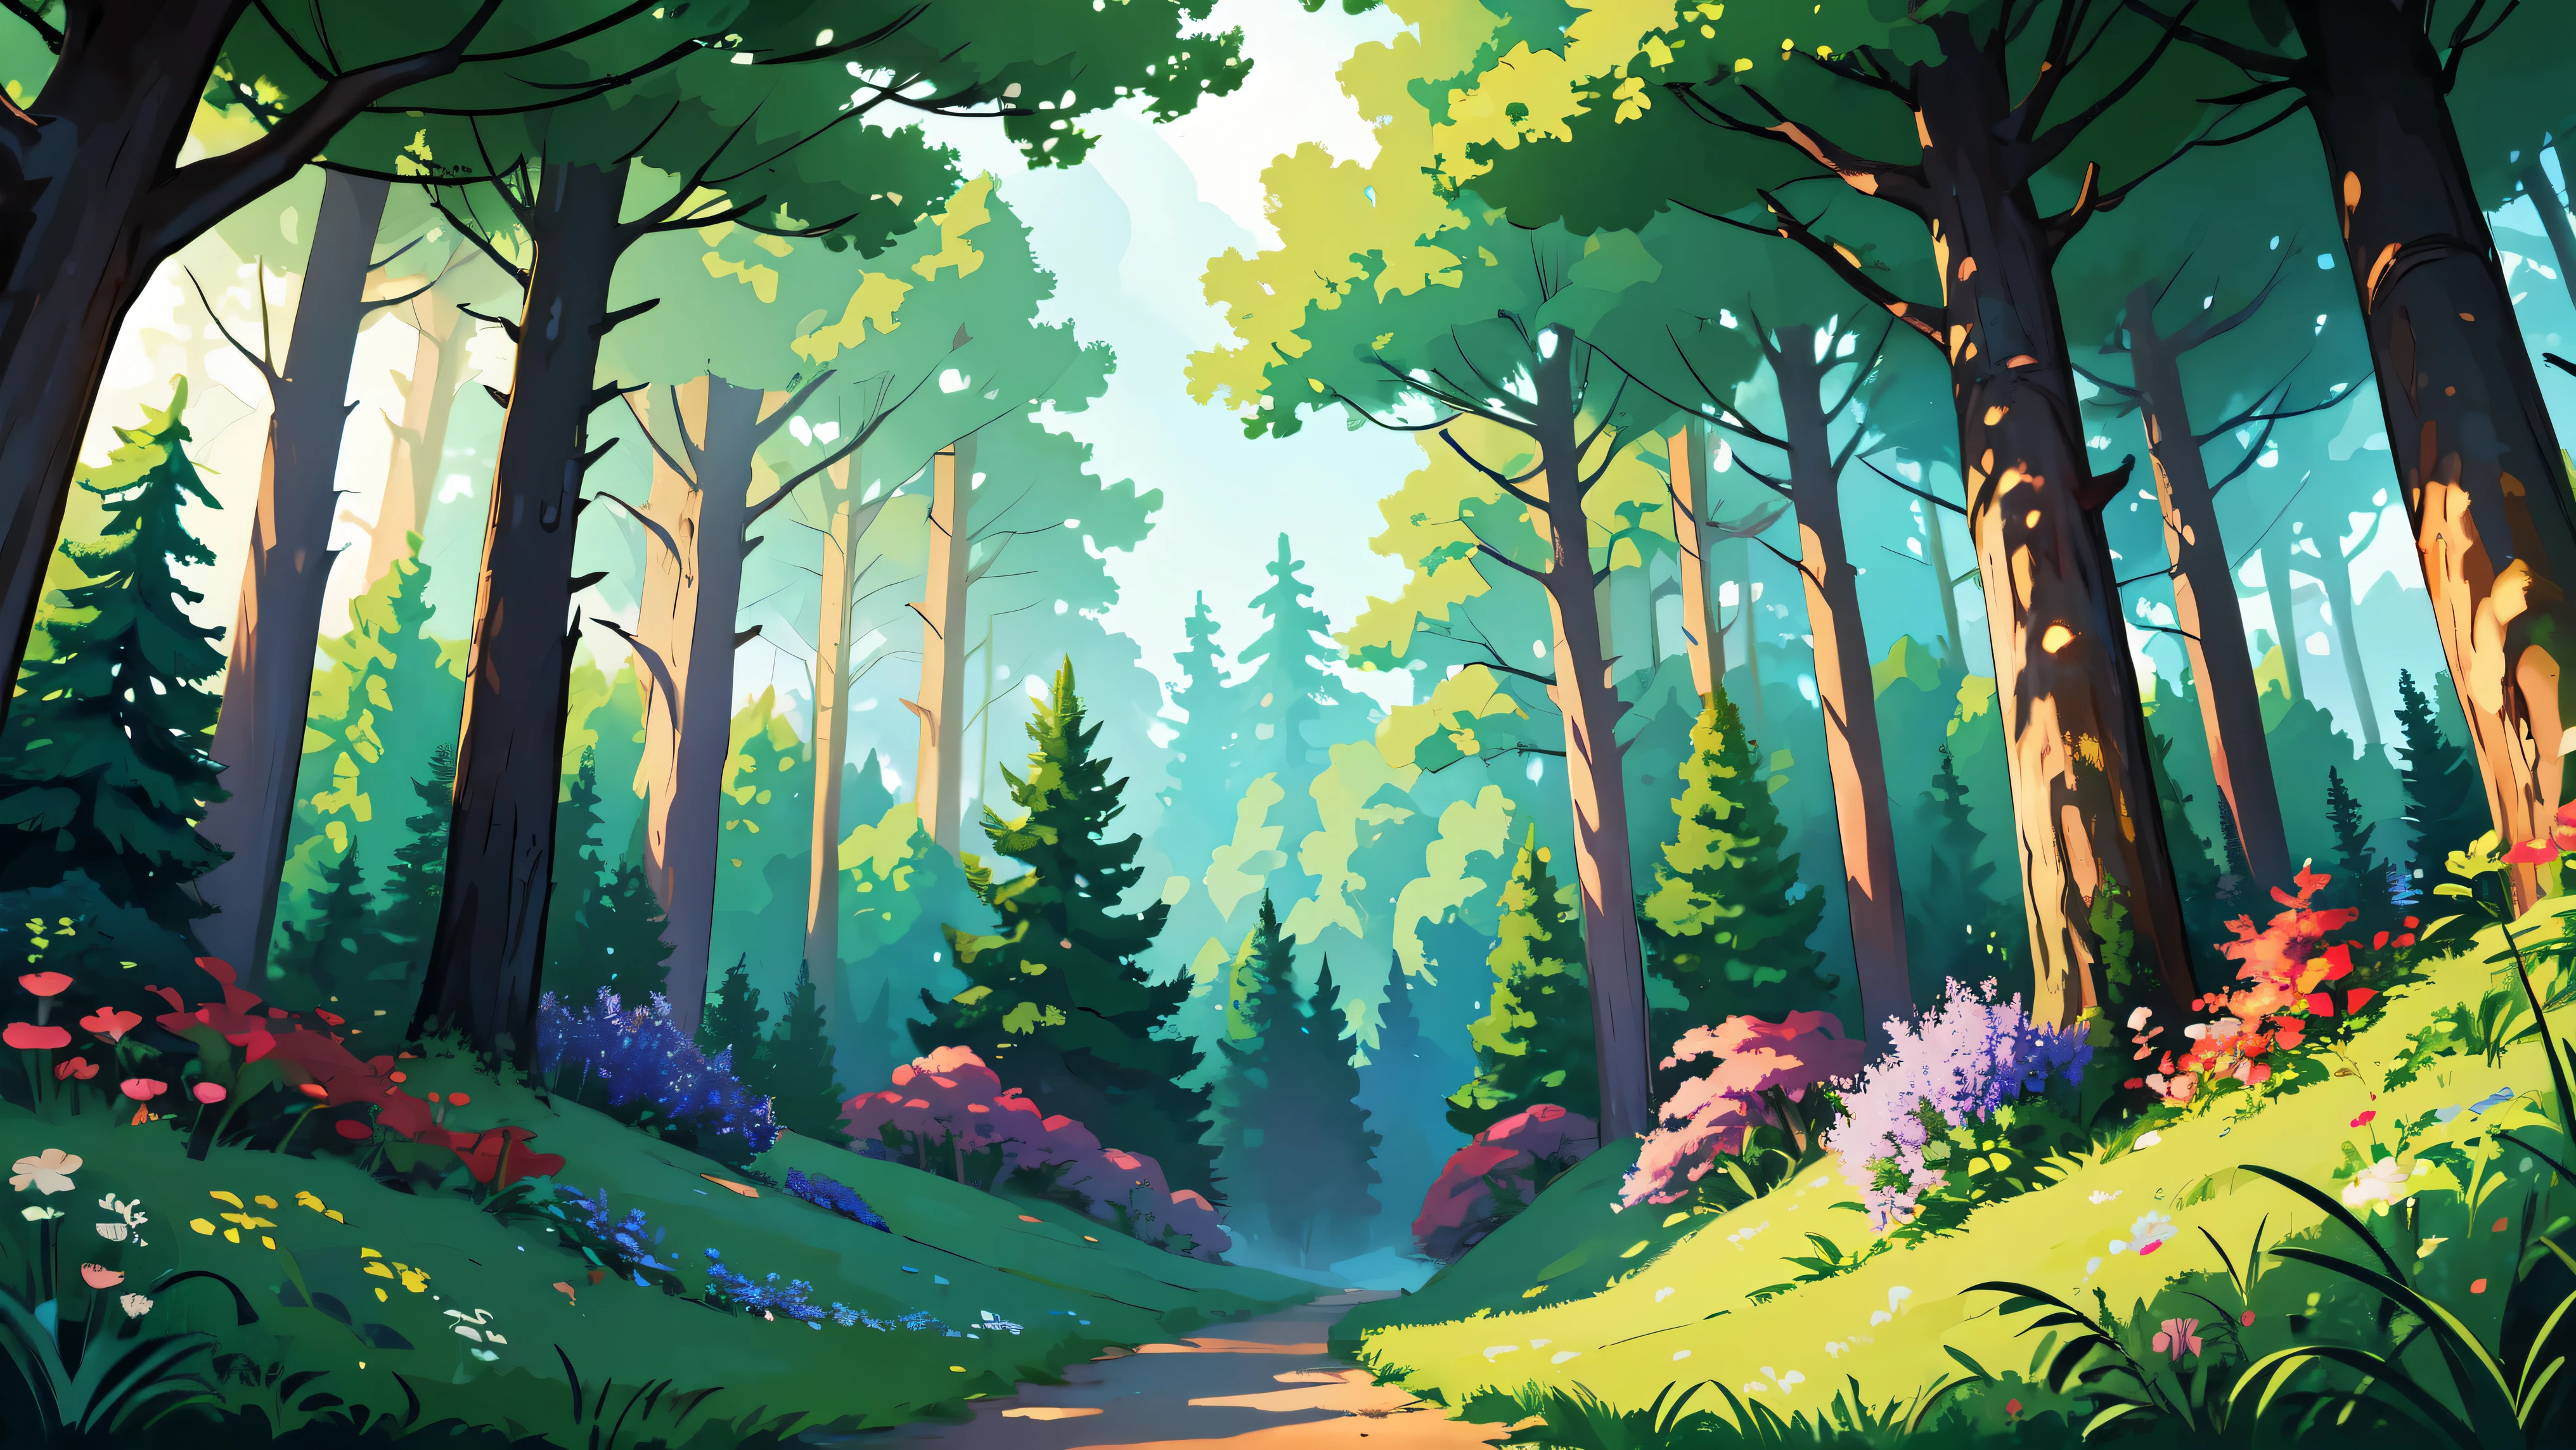 ((明亮的)), Cartoon beautiful fantasy fairy 裡面的森林 with trails and trees on a sunny day, 森林植物, 美麗的仙女蘑菇, 野生美麗的花朵, 詳細的, 詳細的 background artwork masterpiece, Mobile 遊戲背景, 遊戲背景, 2D遊戲美術背景, 森林背景, scenery art 詳細的, 景观艺术品, 手机游戏艺术, 2d 遊戲背景, 動漫背景藝術, 森林空地景觀, 动漫乡村风景, 裡面的森林, elf 森林背景, 森林環境, 詳細的遊戲藝術, 4k